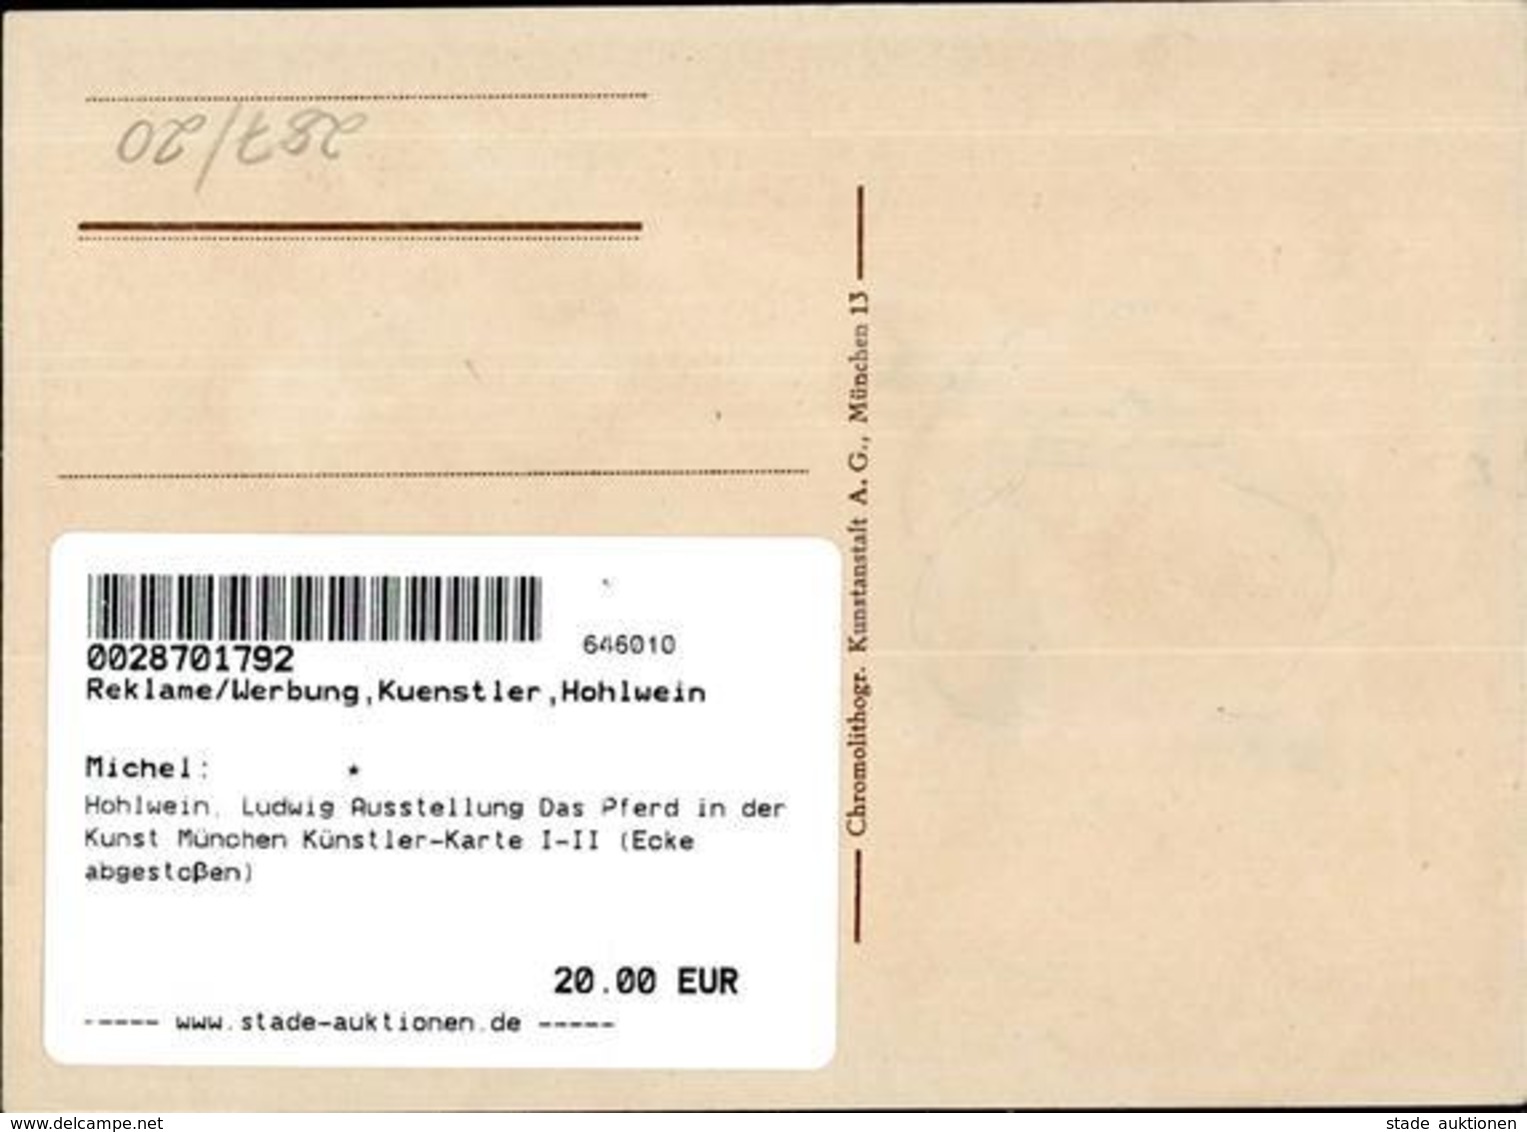 Hohlwein, Ludwig Ausstellung Das Pferd In Der Kunst München Künstler-Karte I-II (Ecke Abgestoßen) Expo - Hohlwein, Ludwig